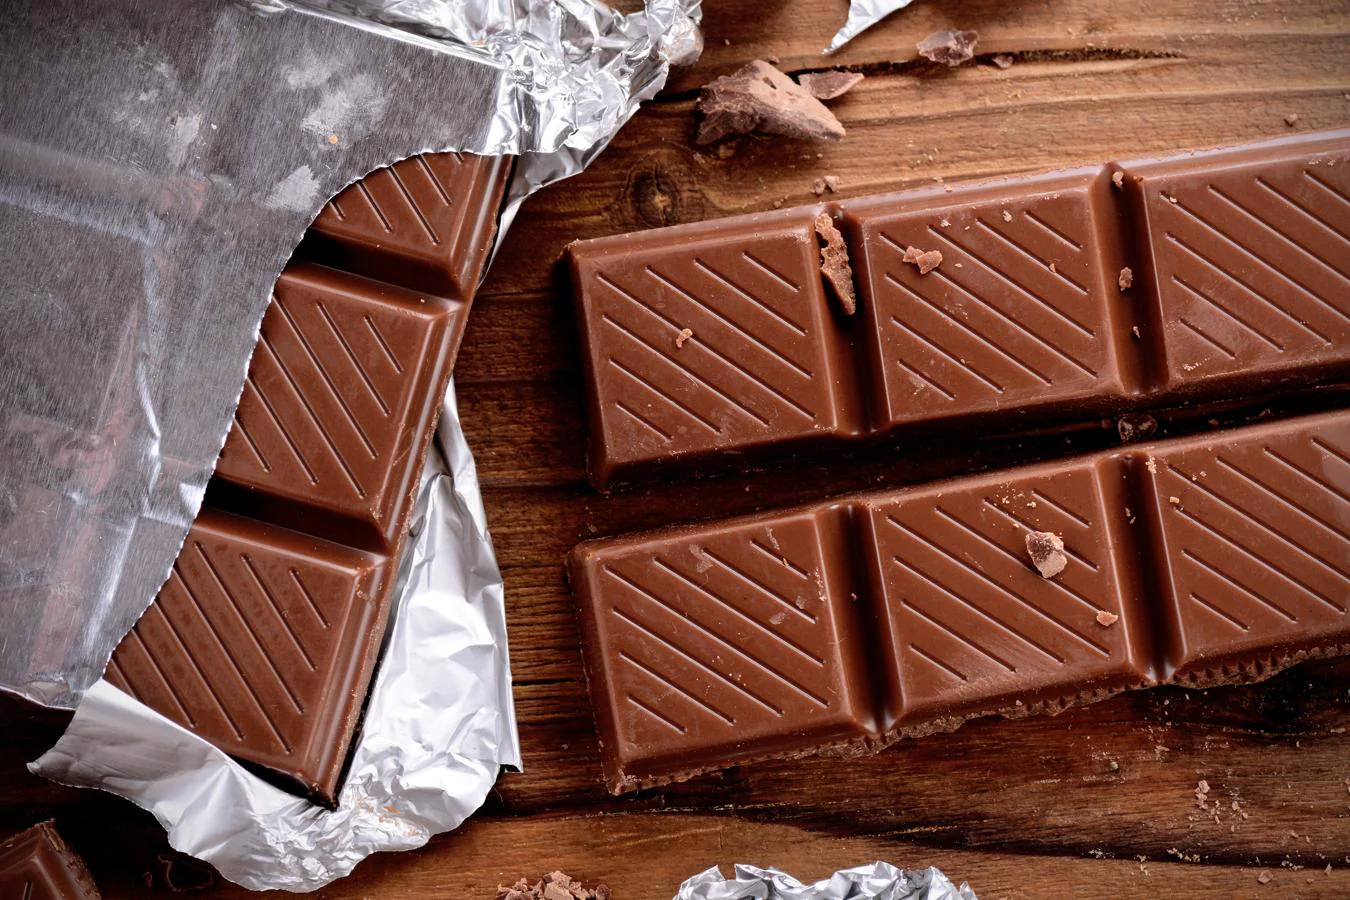 Chocolate. El <a href="https://www.abc.es/bienestar/alimentacion/abci-chocolate-saludable-pero-solo-si-cumple-estas-condiciones-202010300639_noticia.html" target="_blank">chocolate</a>, si es puro, es energético en todas sus versiones. Por ejemplo, una bebida saludable de chocolate debe estar hecha de cacao puro pero sin azúcar. El chocolate negro tiene solo 10 mg de cafeína por ración de 20 gramos (50 mg en una tableta de 100 gramos).